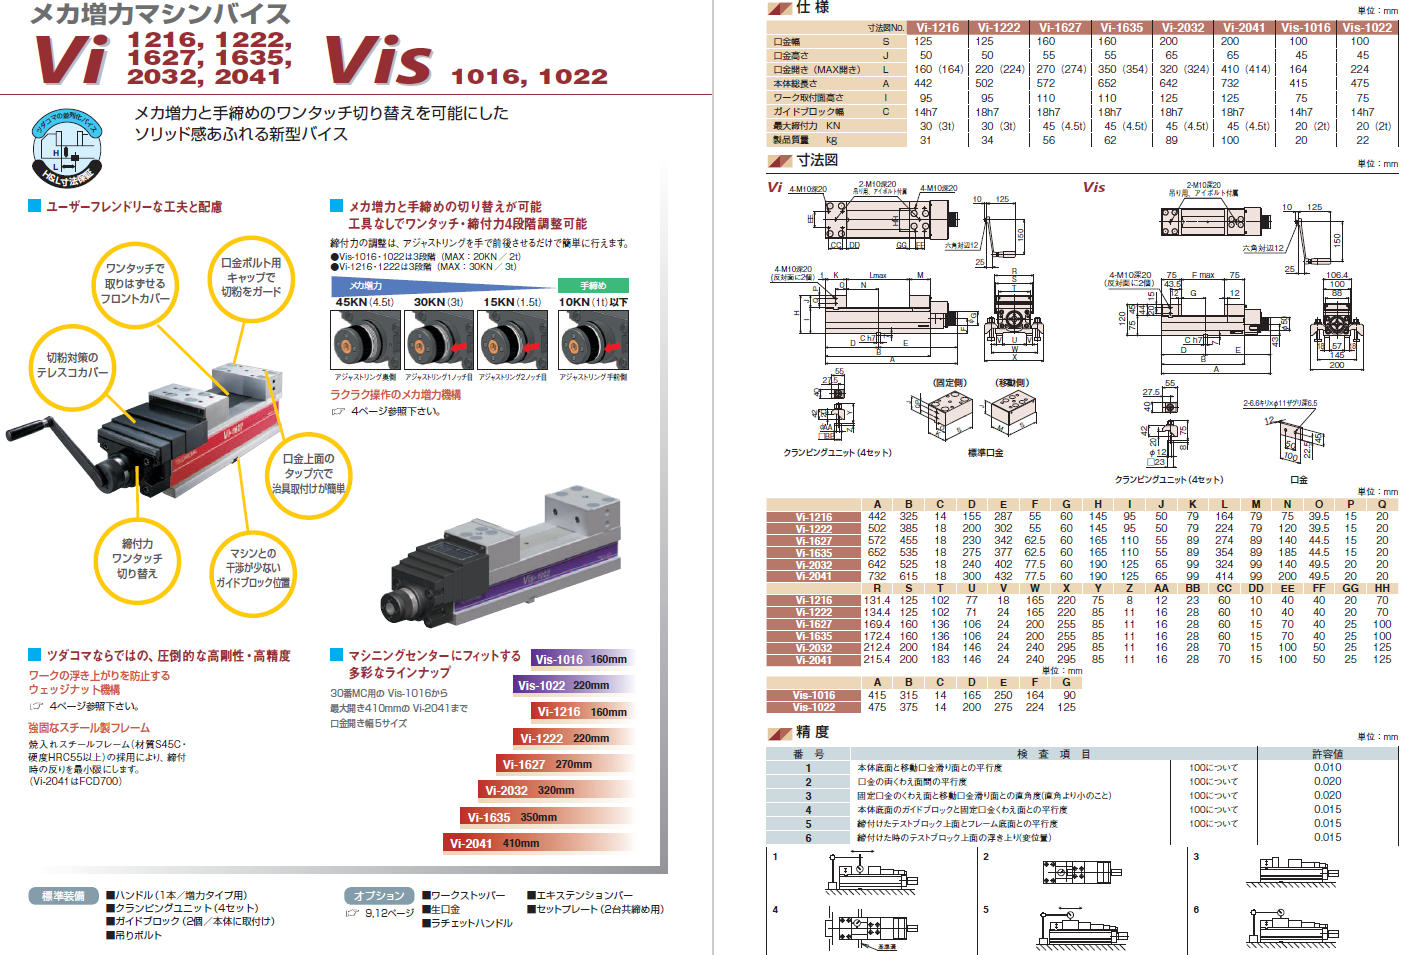 取扱商品情報 / Vis/Vi共通 ﾗﾁｪｯﾄﾊﾝﾄﾞﾙ 津田駒工業㈱ ﾂﾀﾞｺﾏ